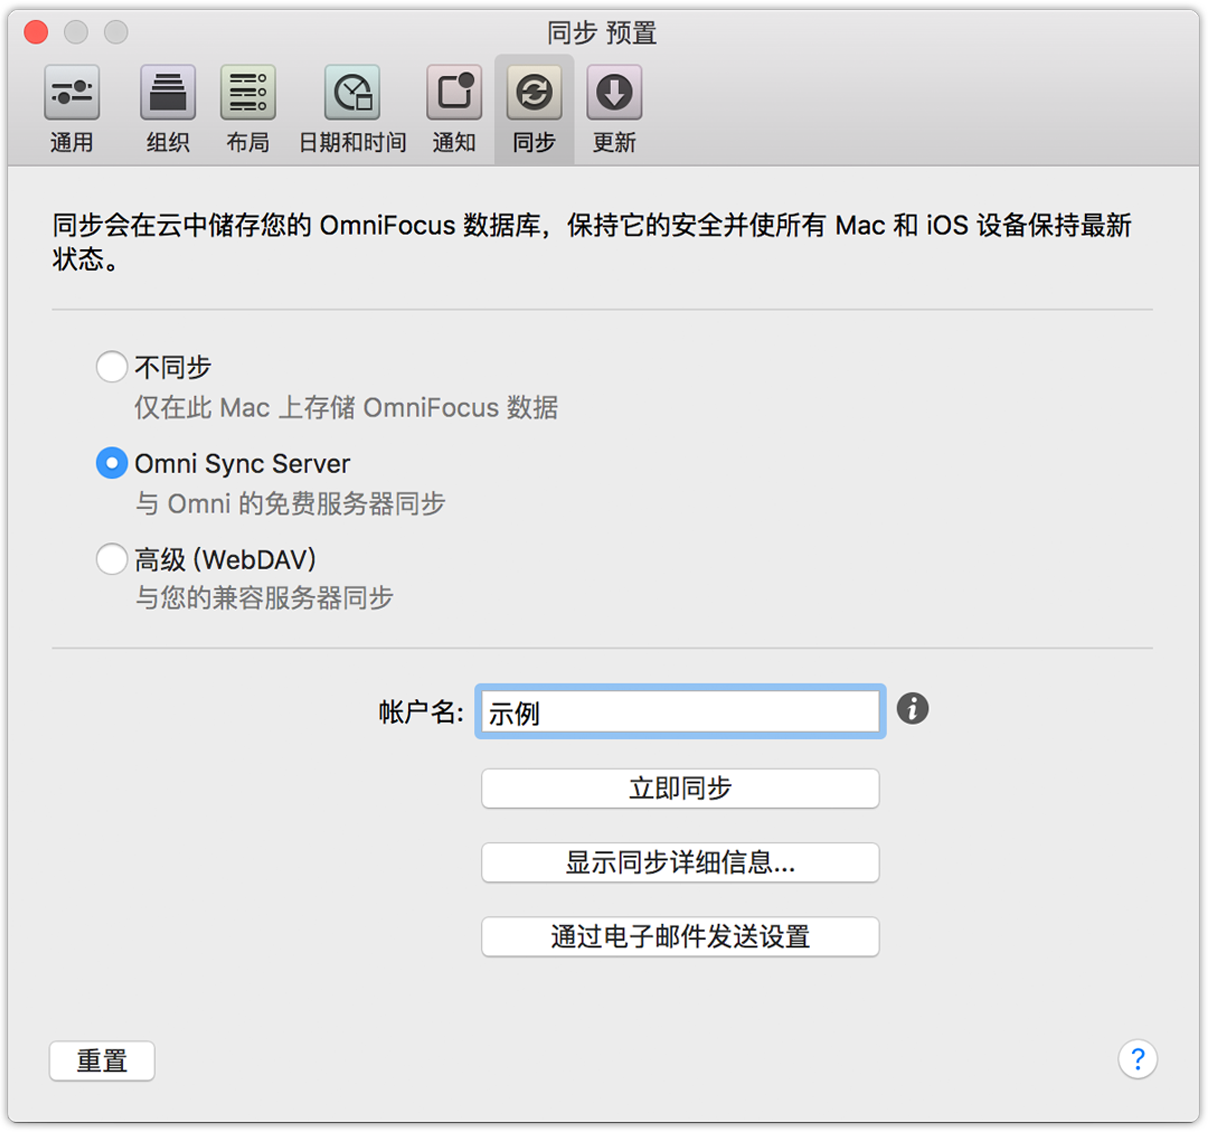 OmniFocus 2 for Mac 同步预置。